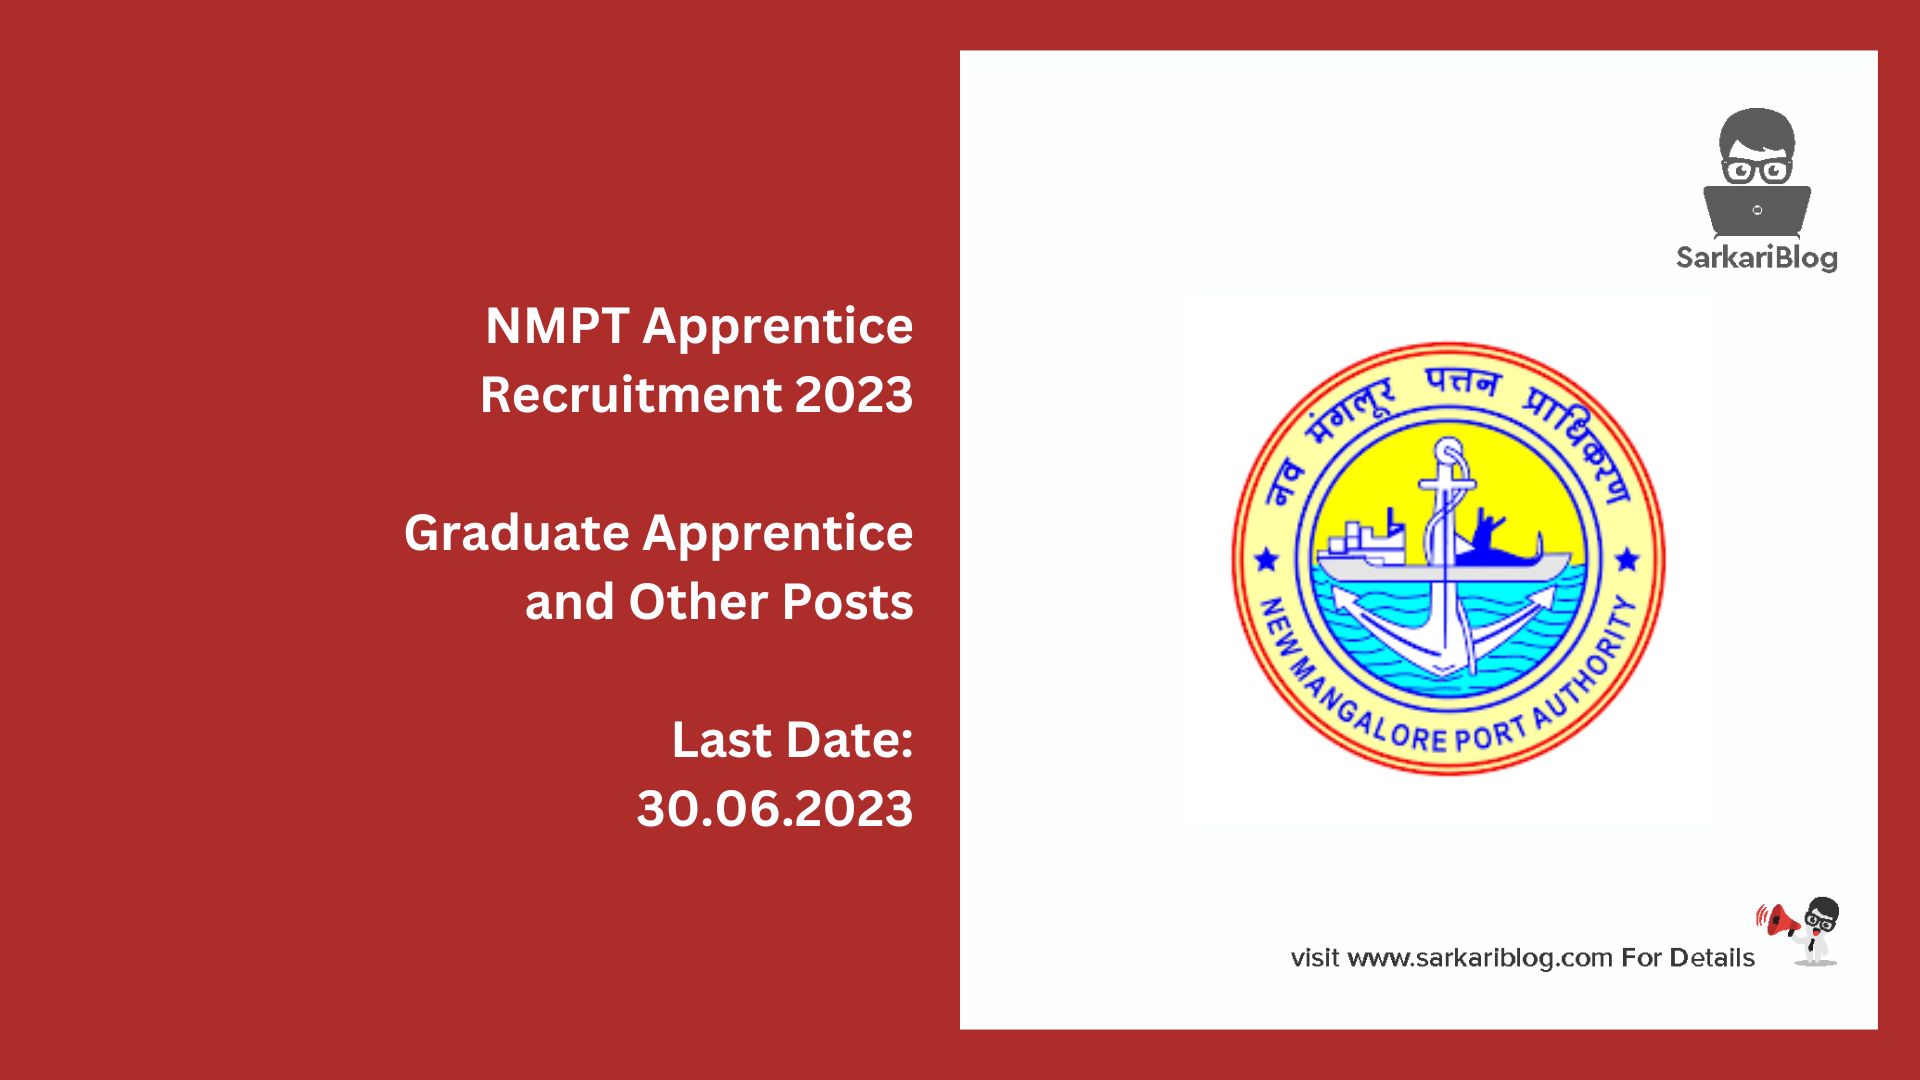 NMPT Apprentice Recruitment 2023